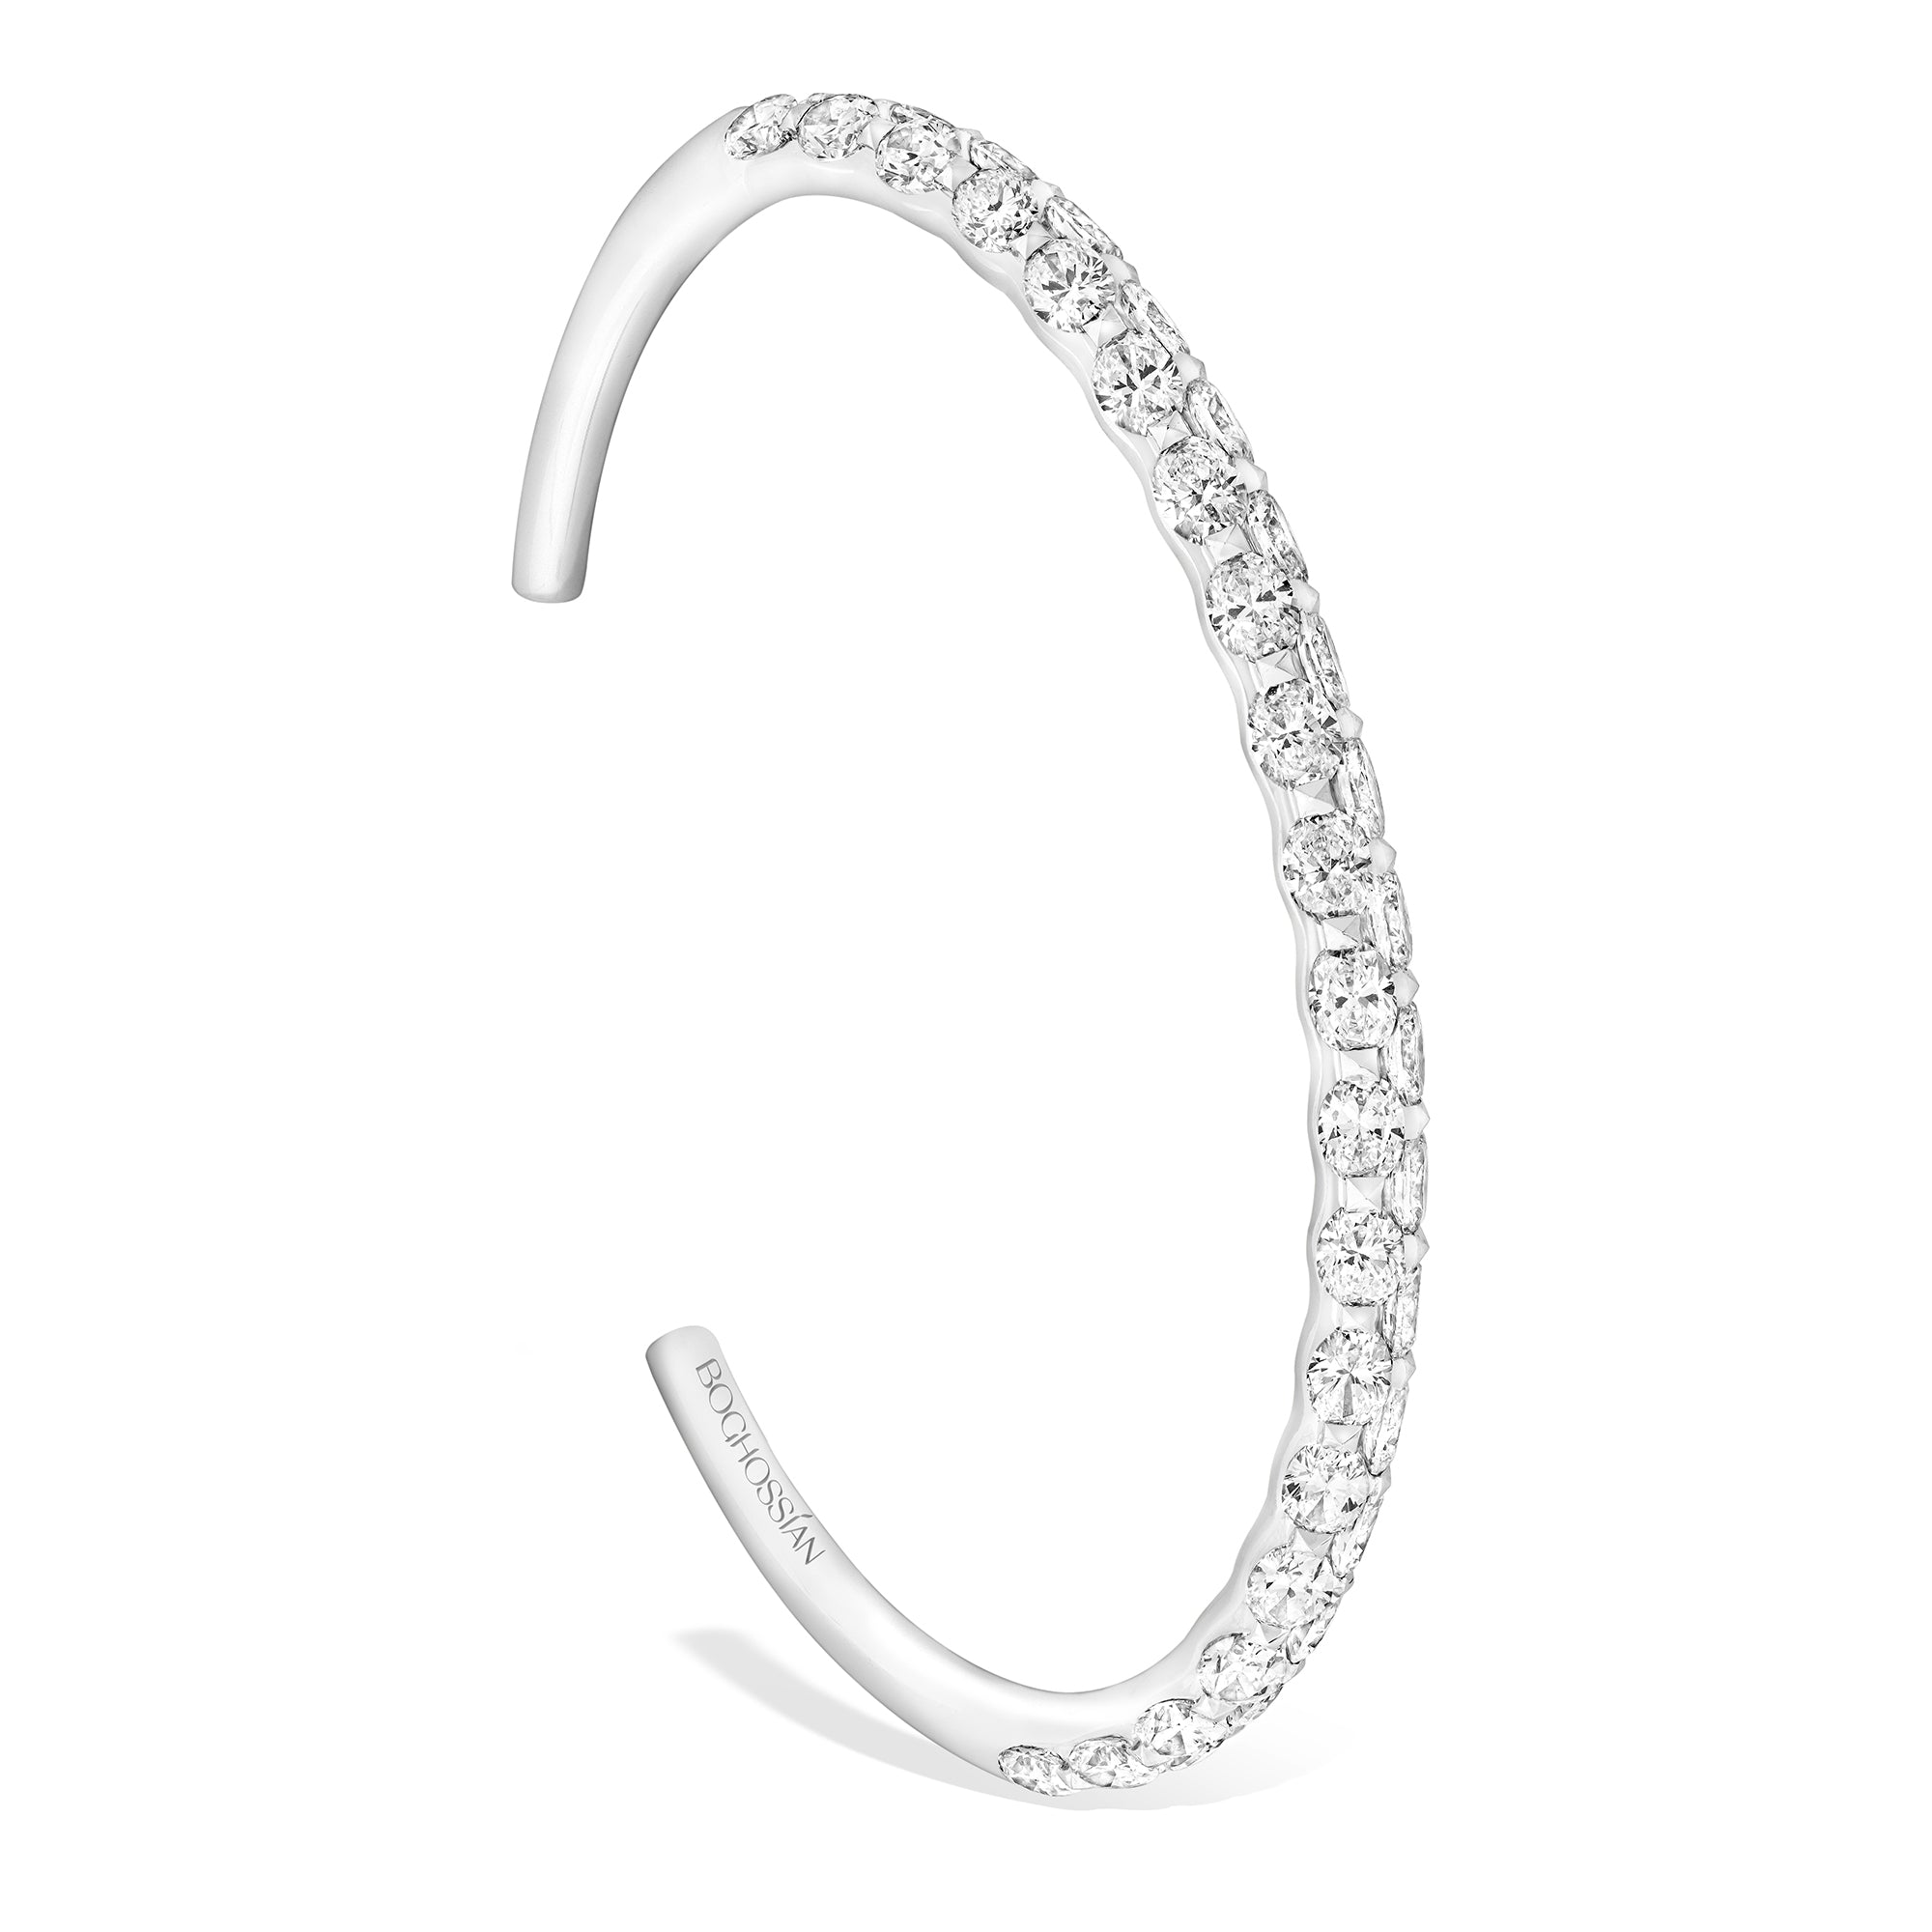 Merveilles Bridal - Oval Diamond Bracelet